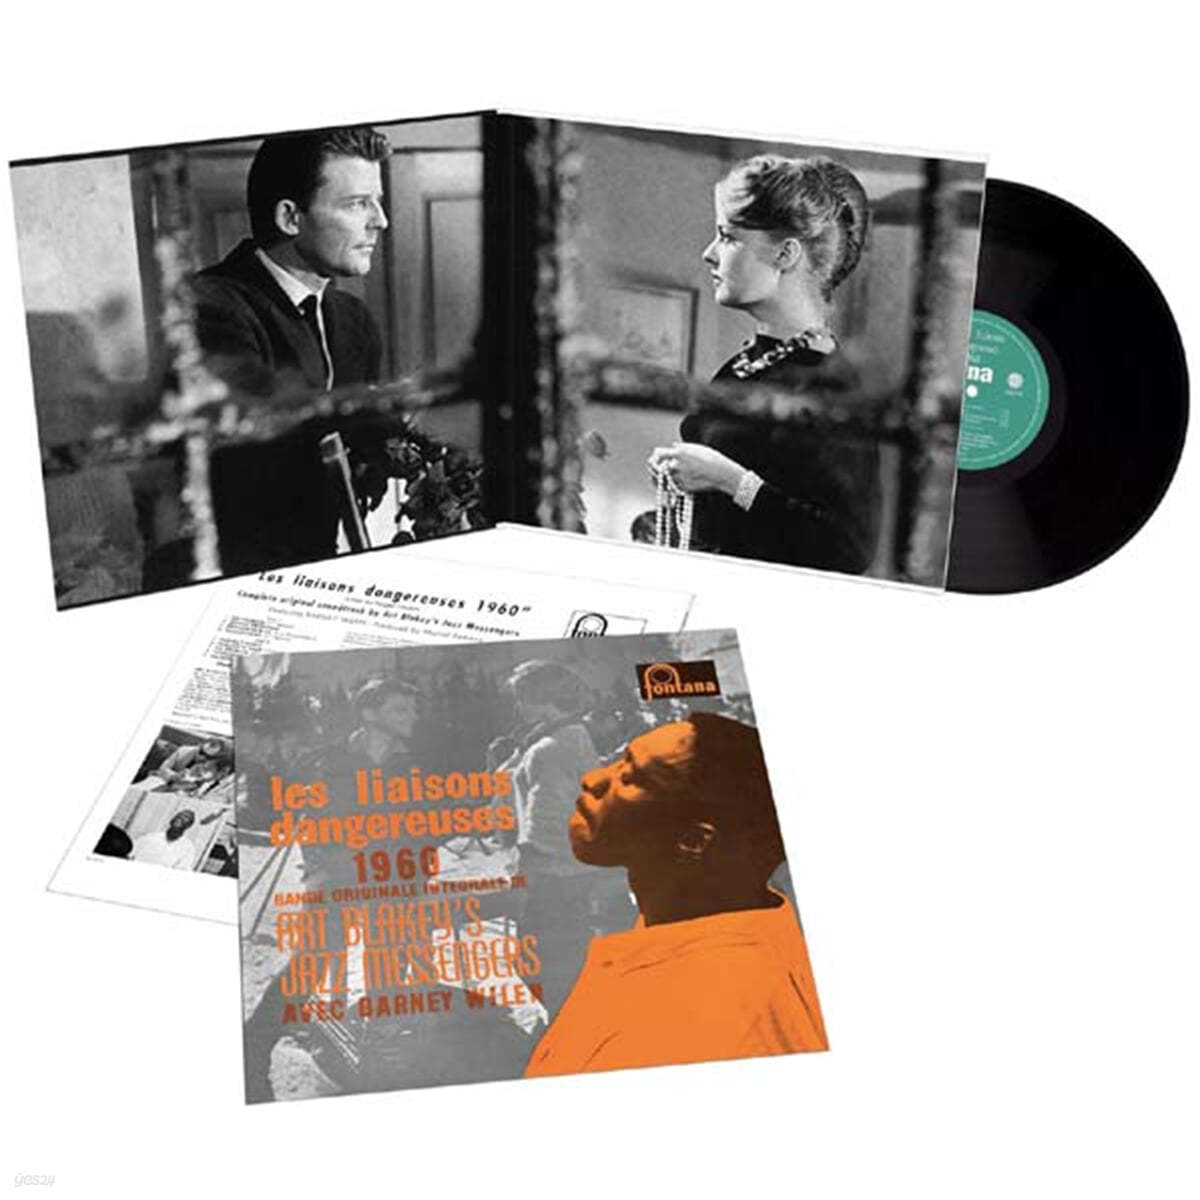 Art Blakey &amp; The Jazz Messengers (아트 블래키 &amp; 재즈 메신저스) - Les liaisons dangereuses 1960 [LP]